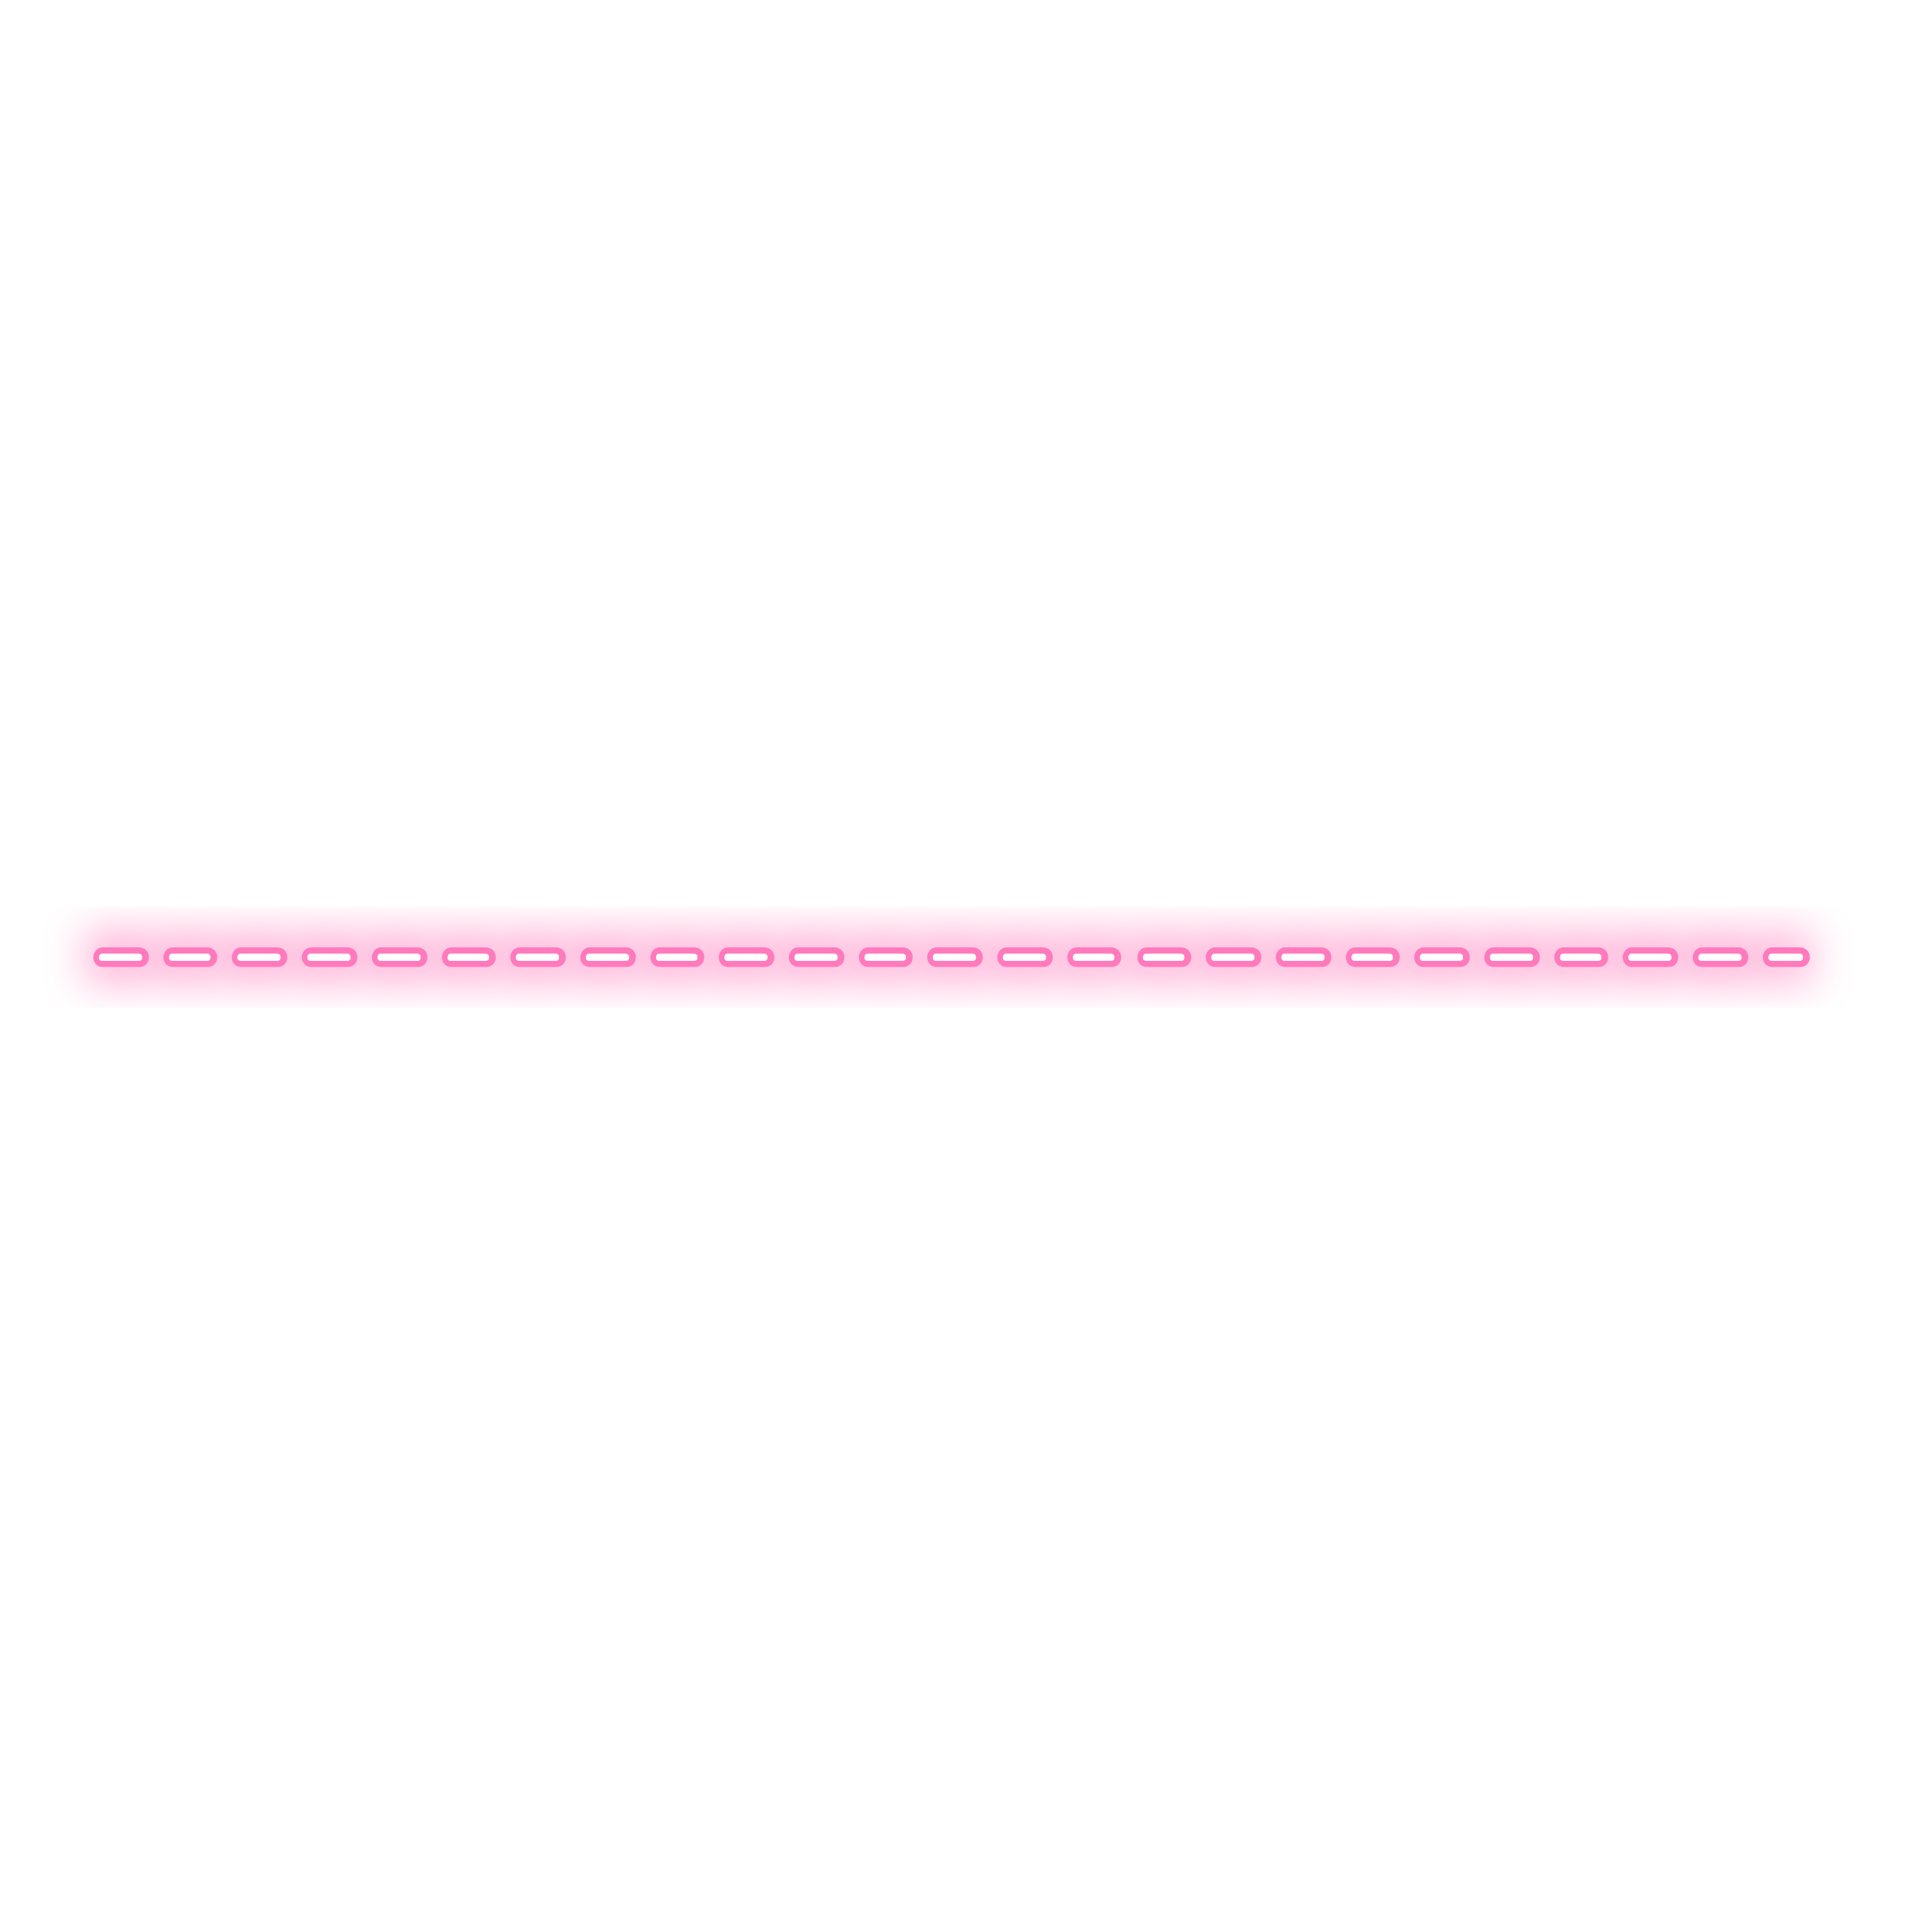 Neon Lines Point Pink Sticker By نسمة حنين